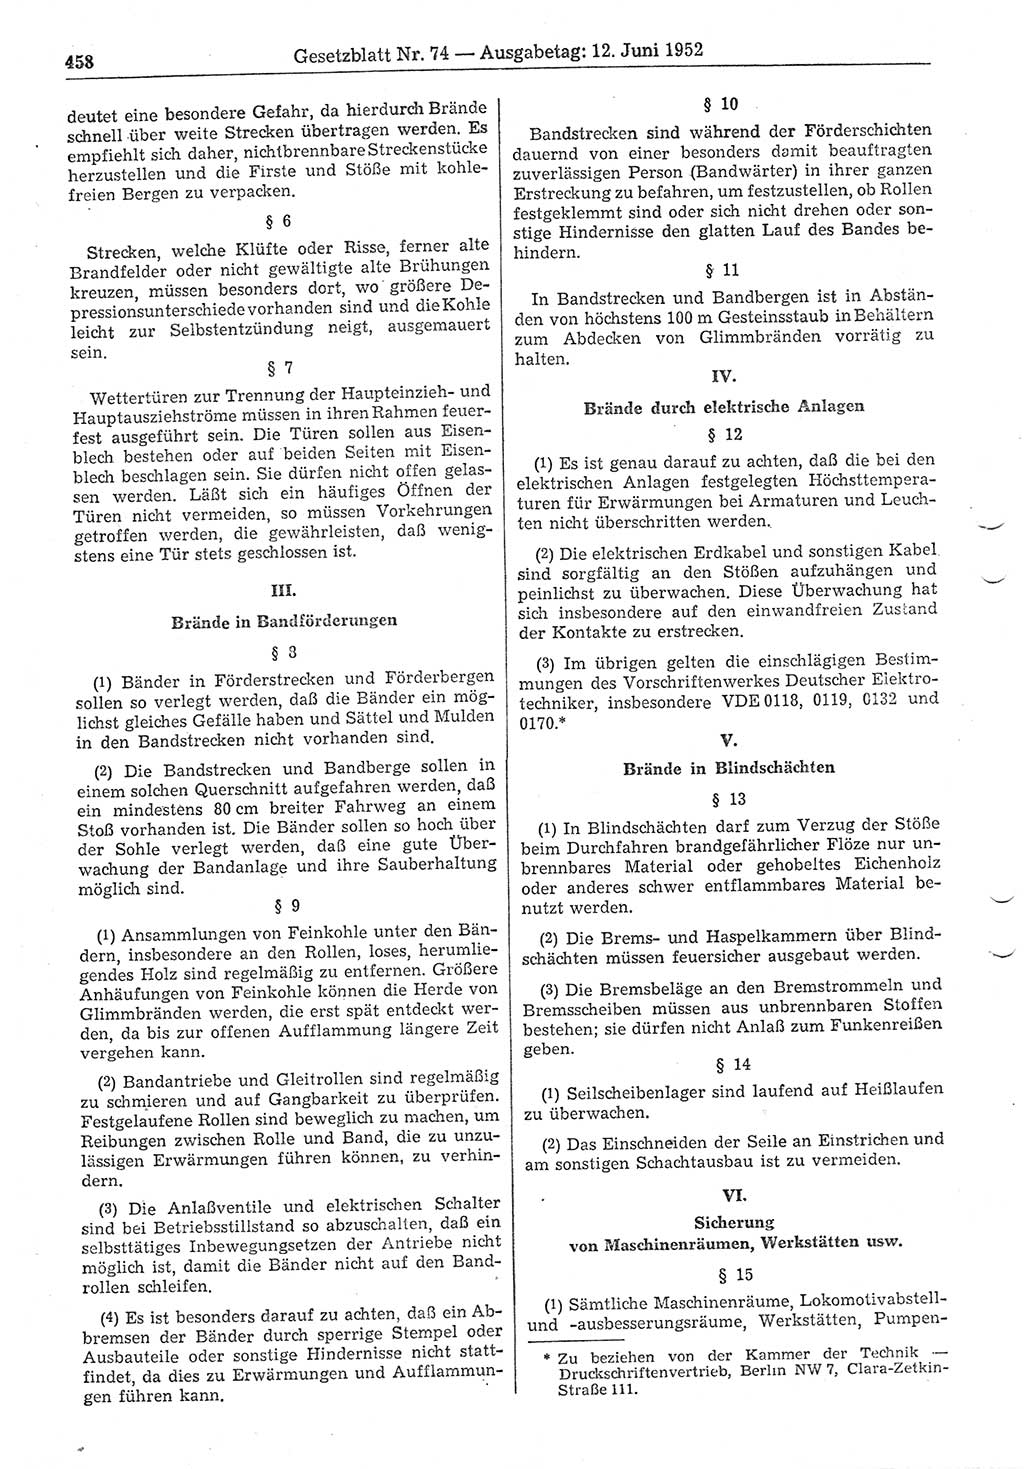 Gesetzblatt (GBl.) der Deutschen Demokratischen Republik (DDR) 1952, Seite 458 (GBl. DDR 1952, S. 458)